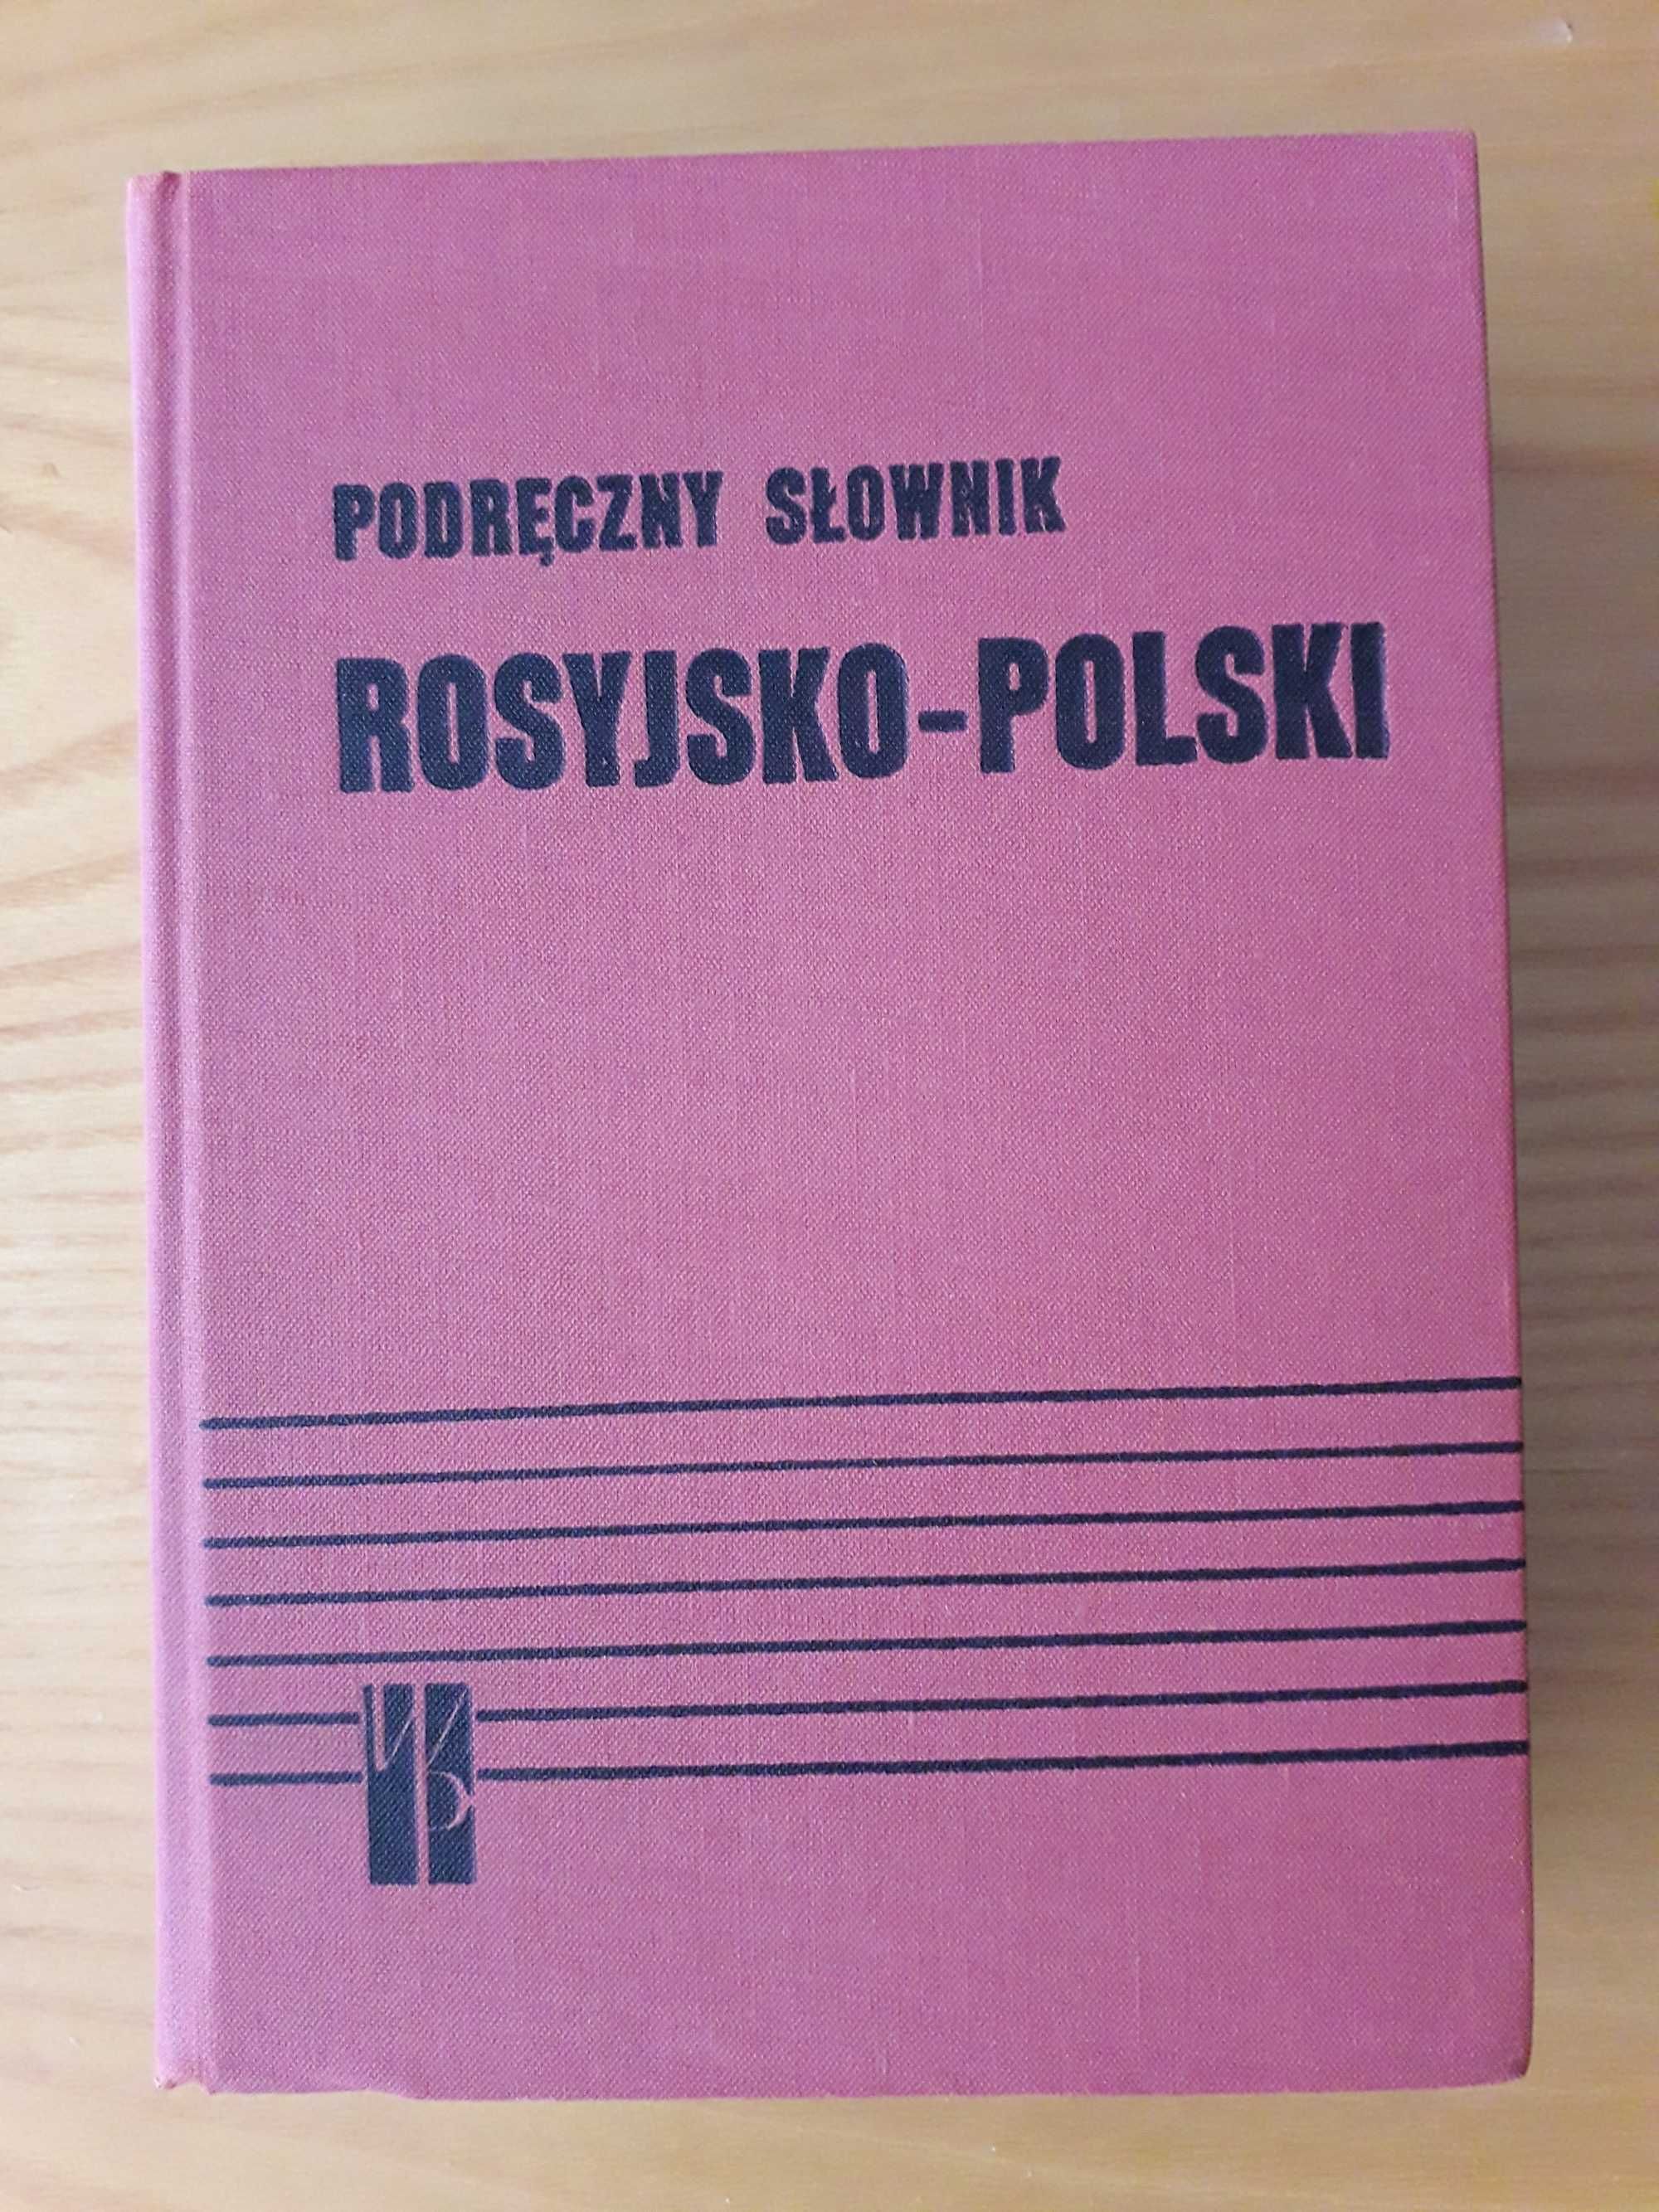 Podręczny słownik ROSYJSKO - POLSKI pod red. J. H. Dworeckiego